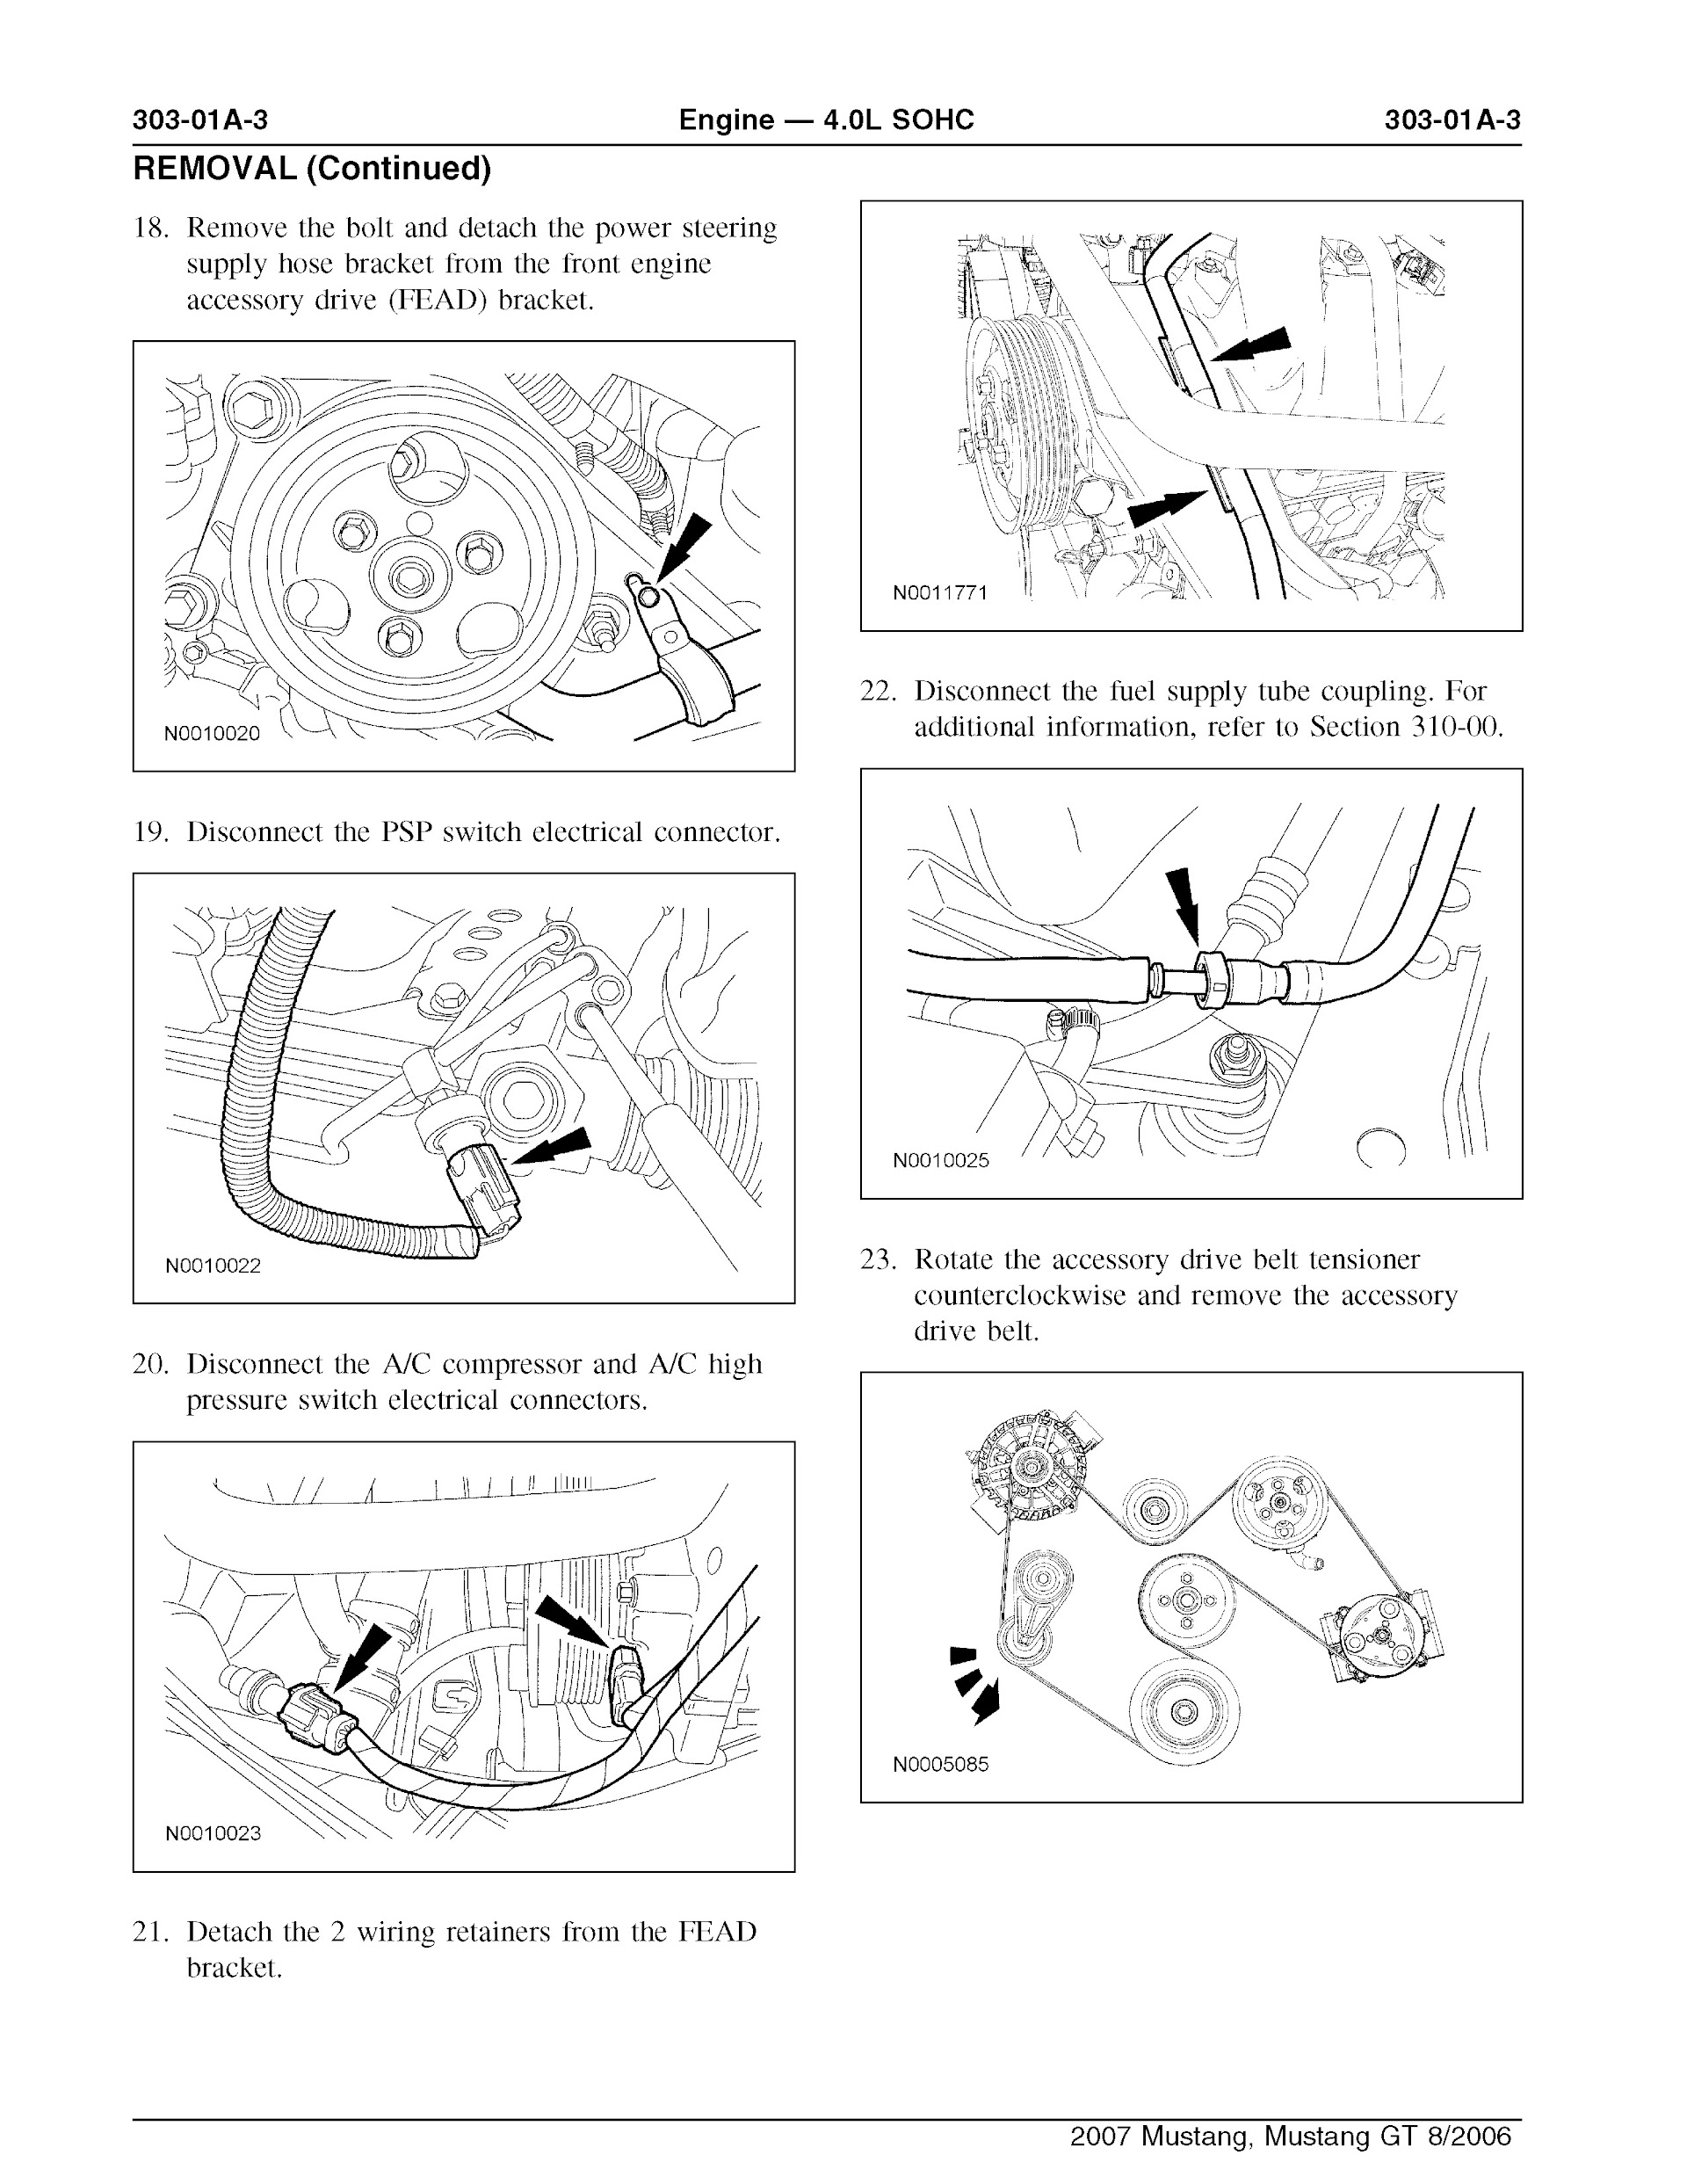 2007 Ford Mustang Repair Manual, Engine 4.0L SOHC